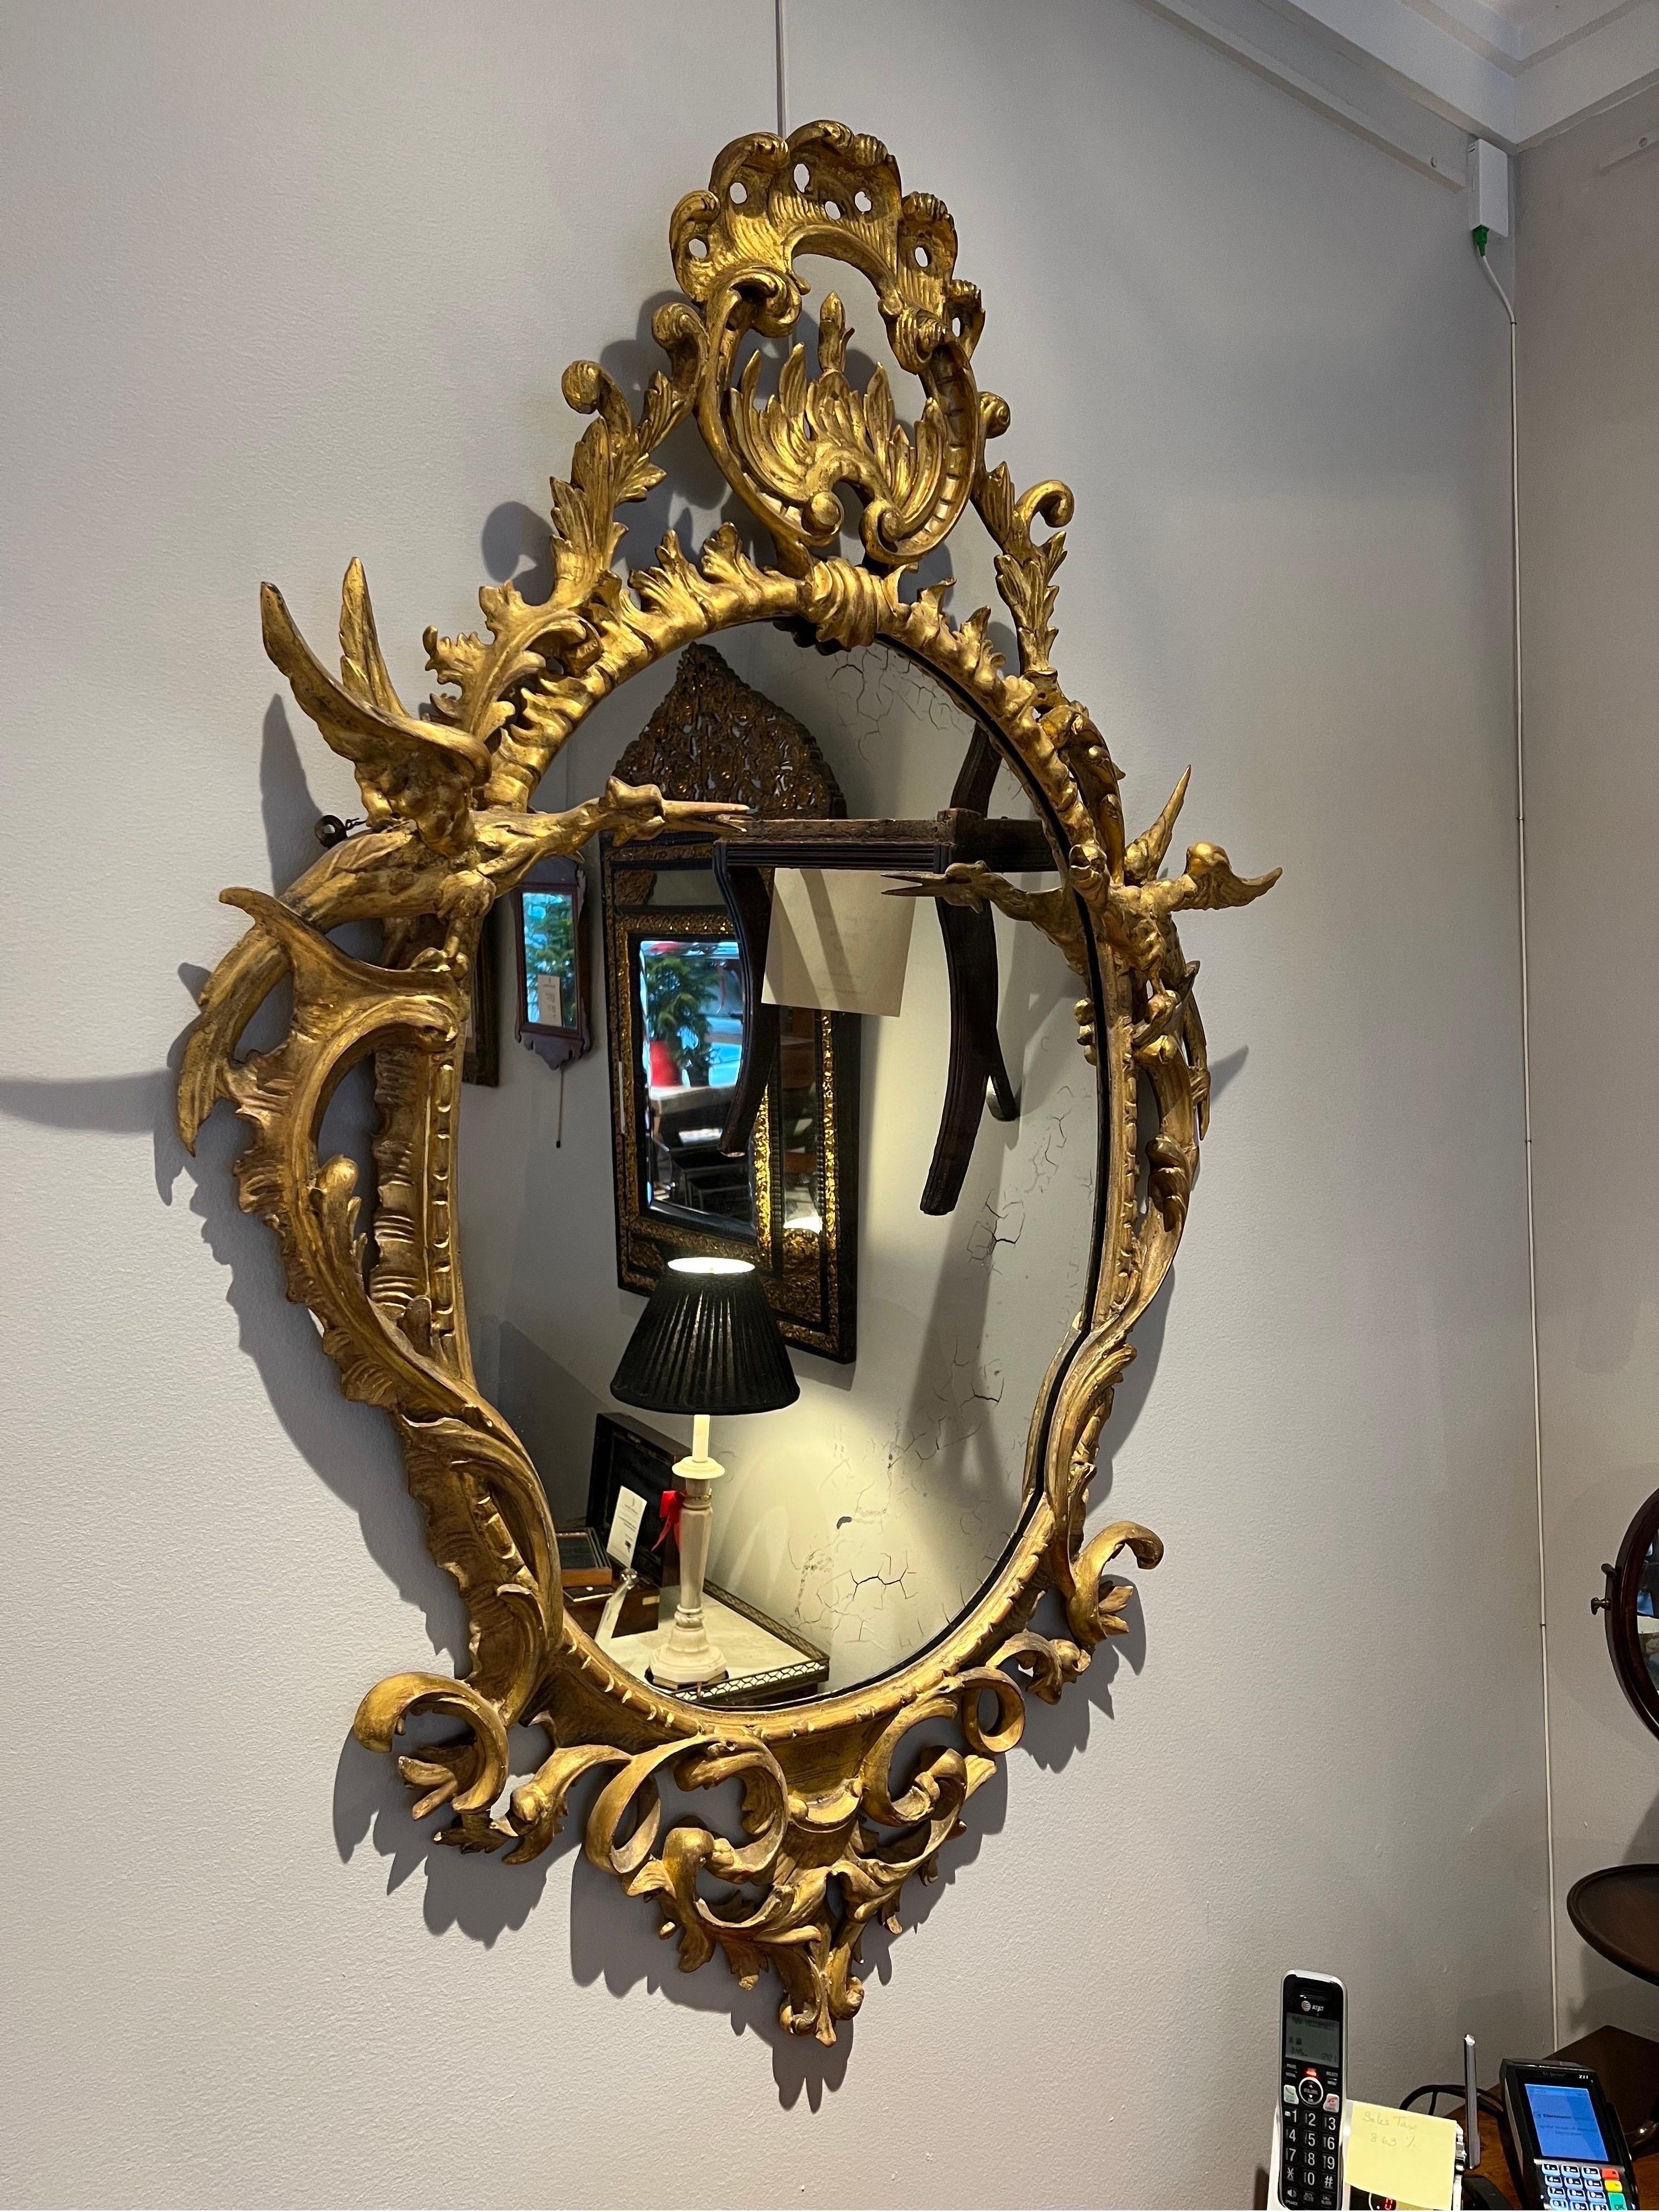 Spiegel aus vergoldetem Holz im Stil von George III. Mit einer ovalen Spiegelplatte, 
umgeben von einem blattgeschnitzten Goldholz-Ruhm. Der ovale Rahmen 
mit 2 geschnitzten Ho-Ho-Vögeln unterhalb der geschnitzten mit einer zentralen